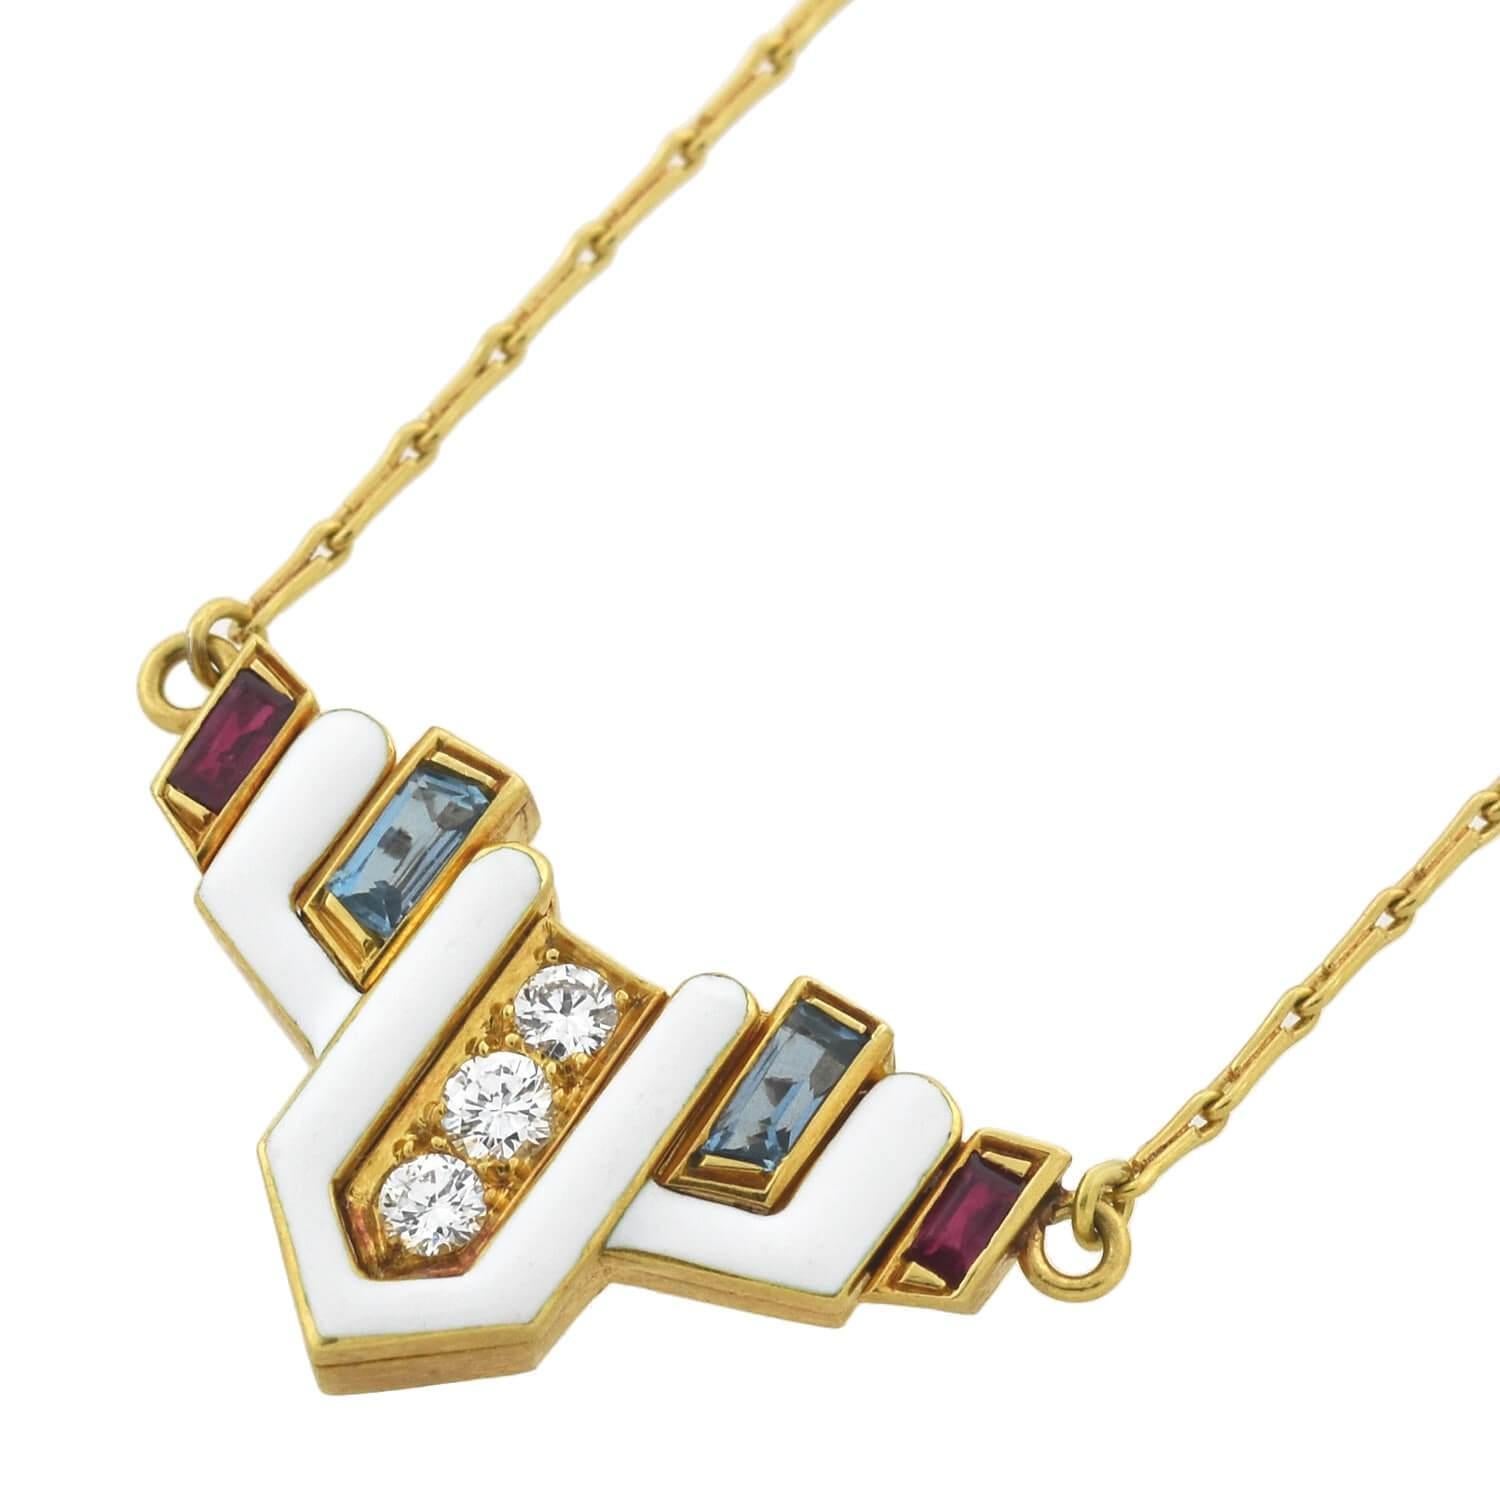 Contemporary David Webb Vintage Enamel and Multi-Gemstone Necklace